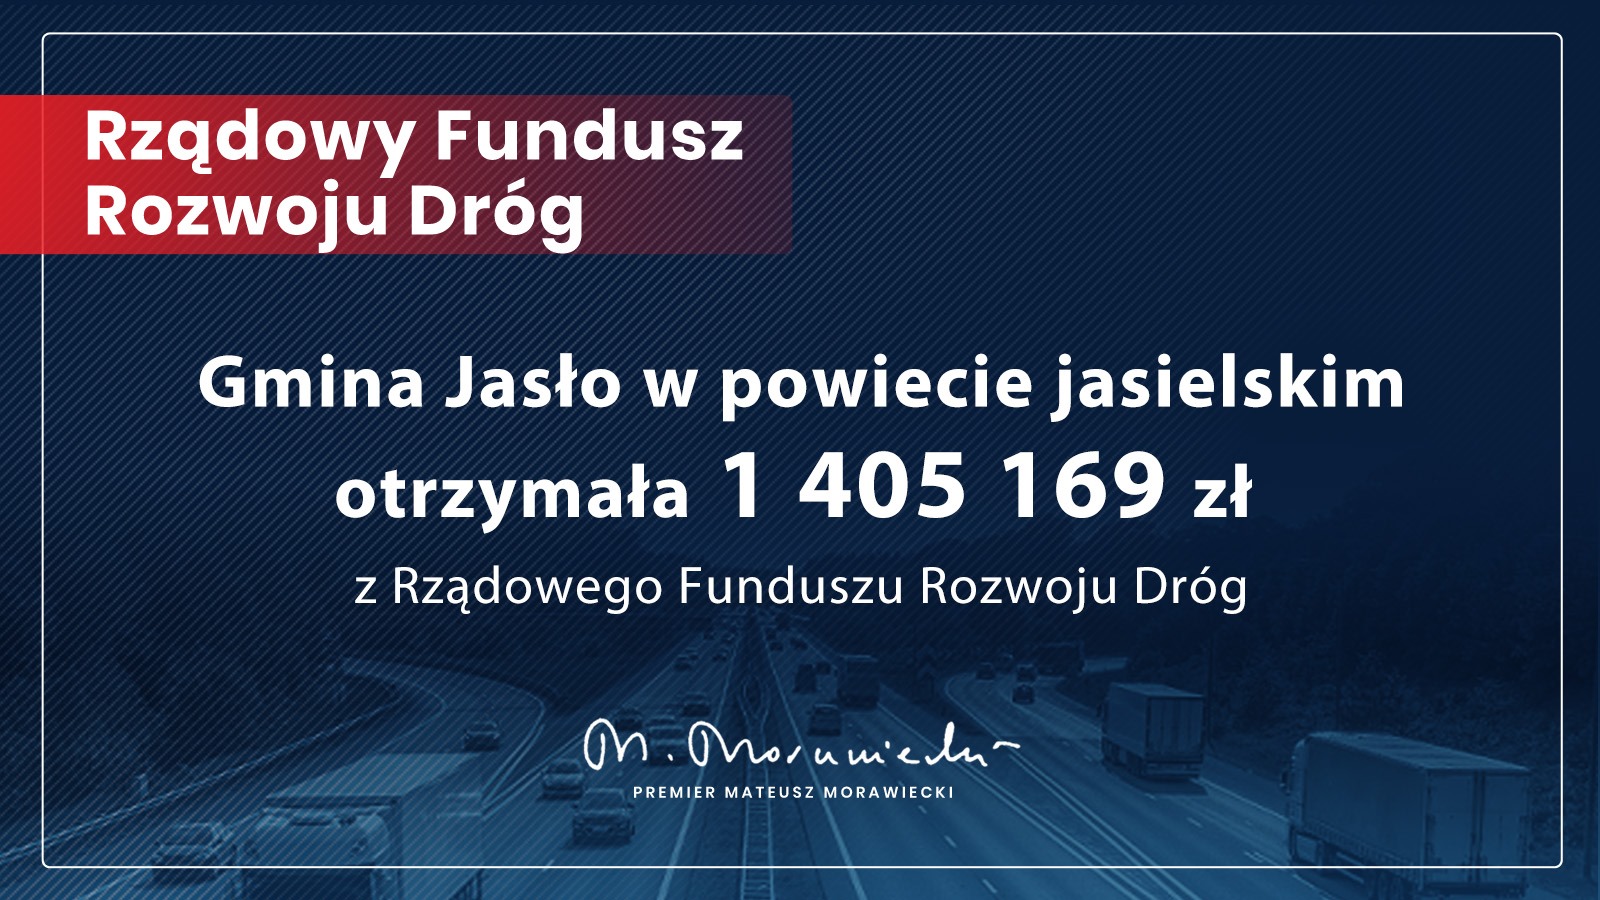 Gmina Jasło otrzymała 1 405 169 zł w ramach Rządowego Funduszu Rozwoju Dróg